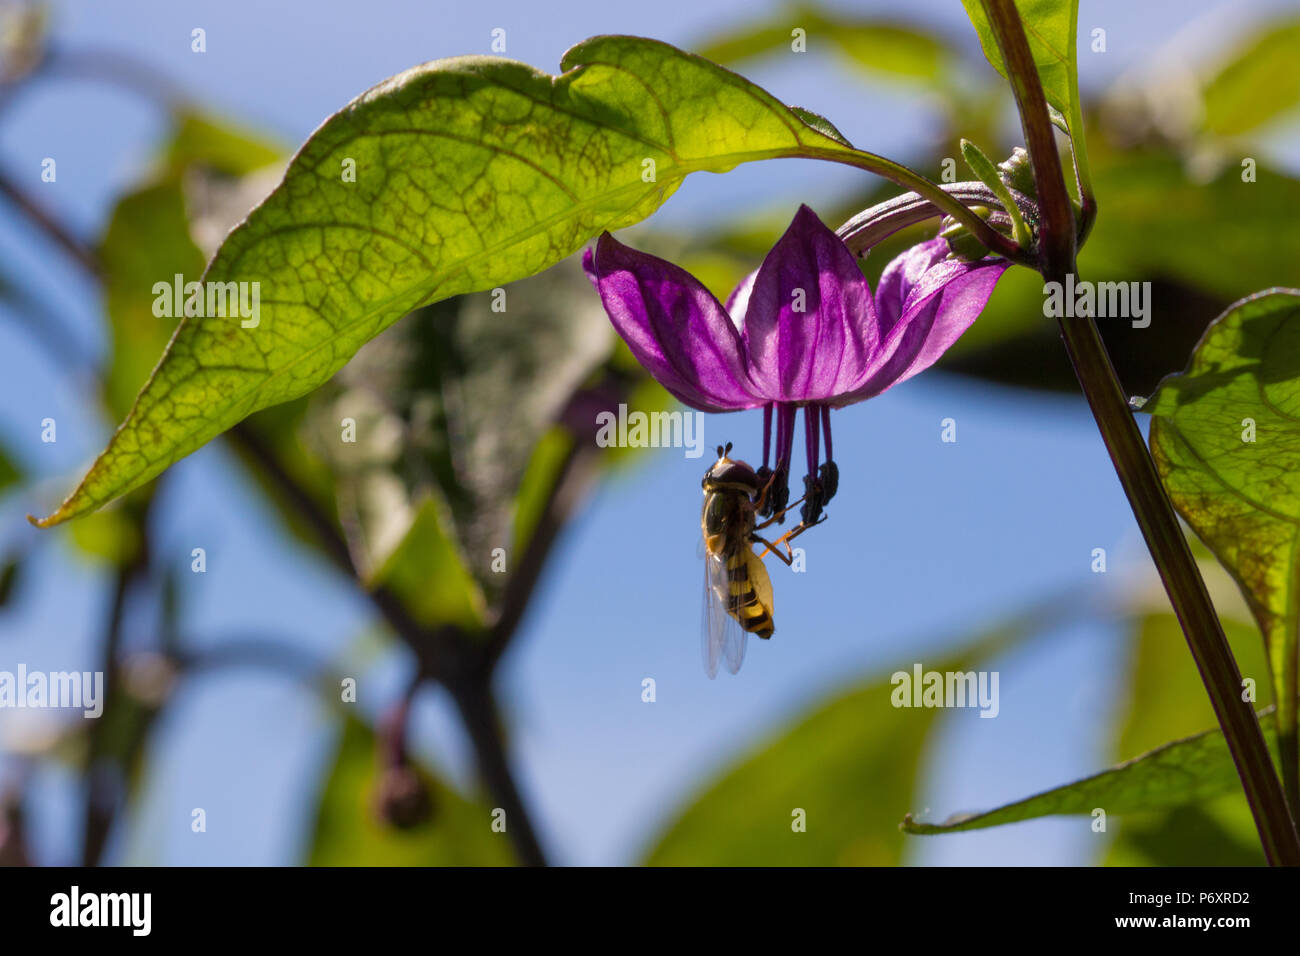 Prise d'un gros plan sur un hoverfly piment serrano violet avec fleurs feuilles vert et bleu ciel. Banque D'Images